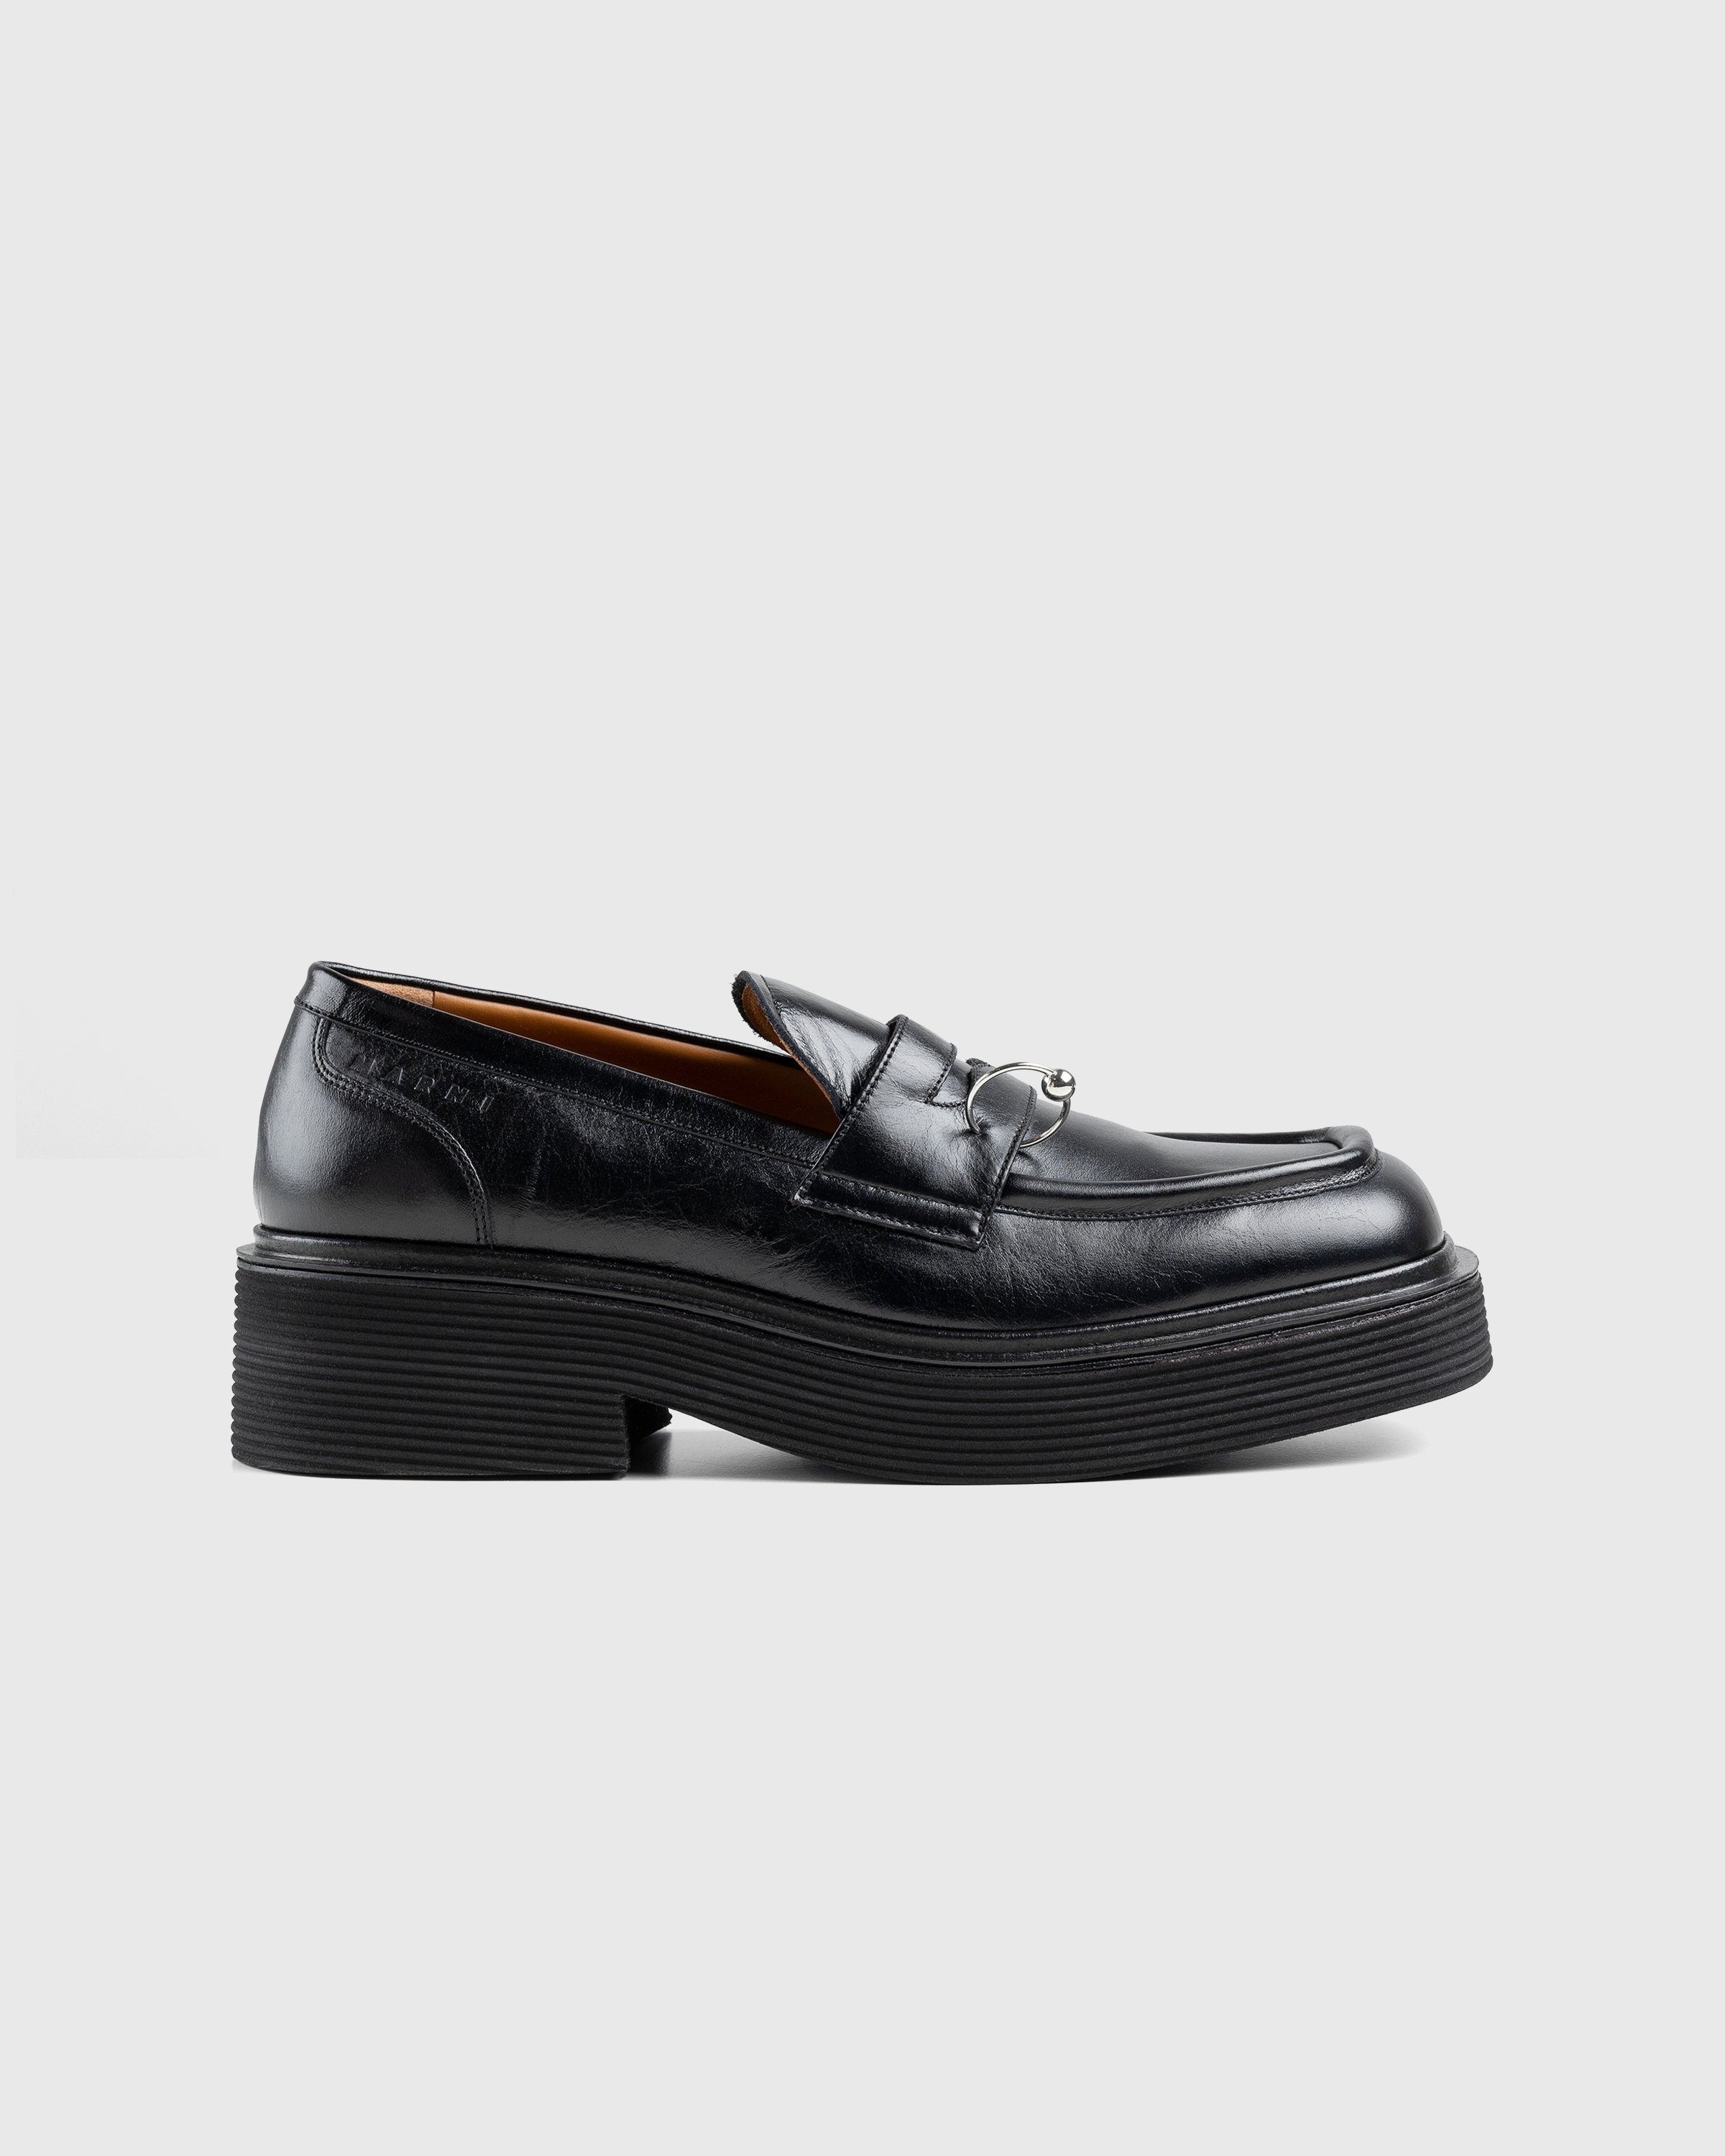 Marni – Shiny Leather Moccasin Black - Shoes - Black - Image 1